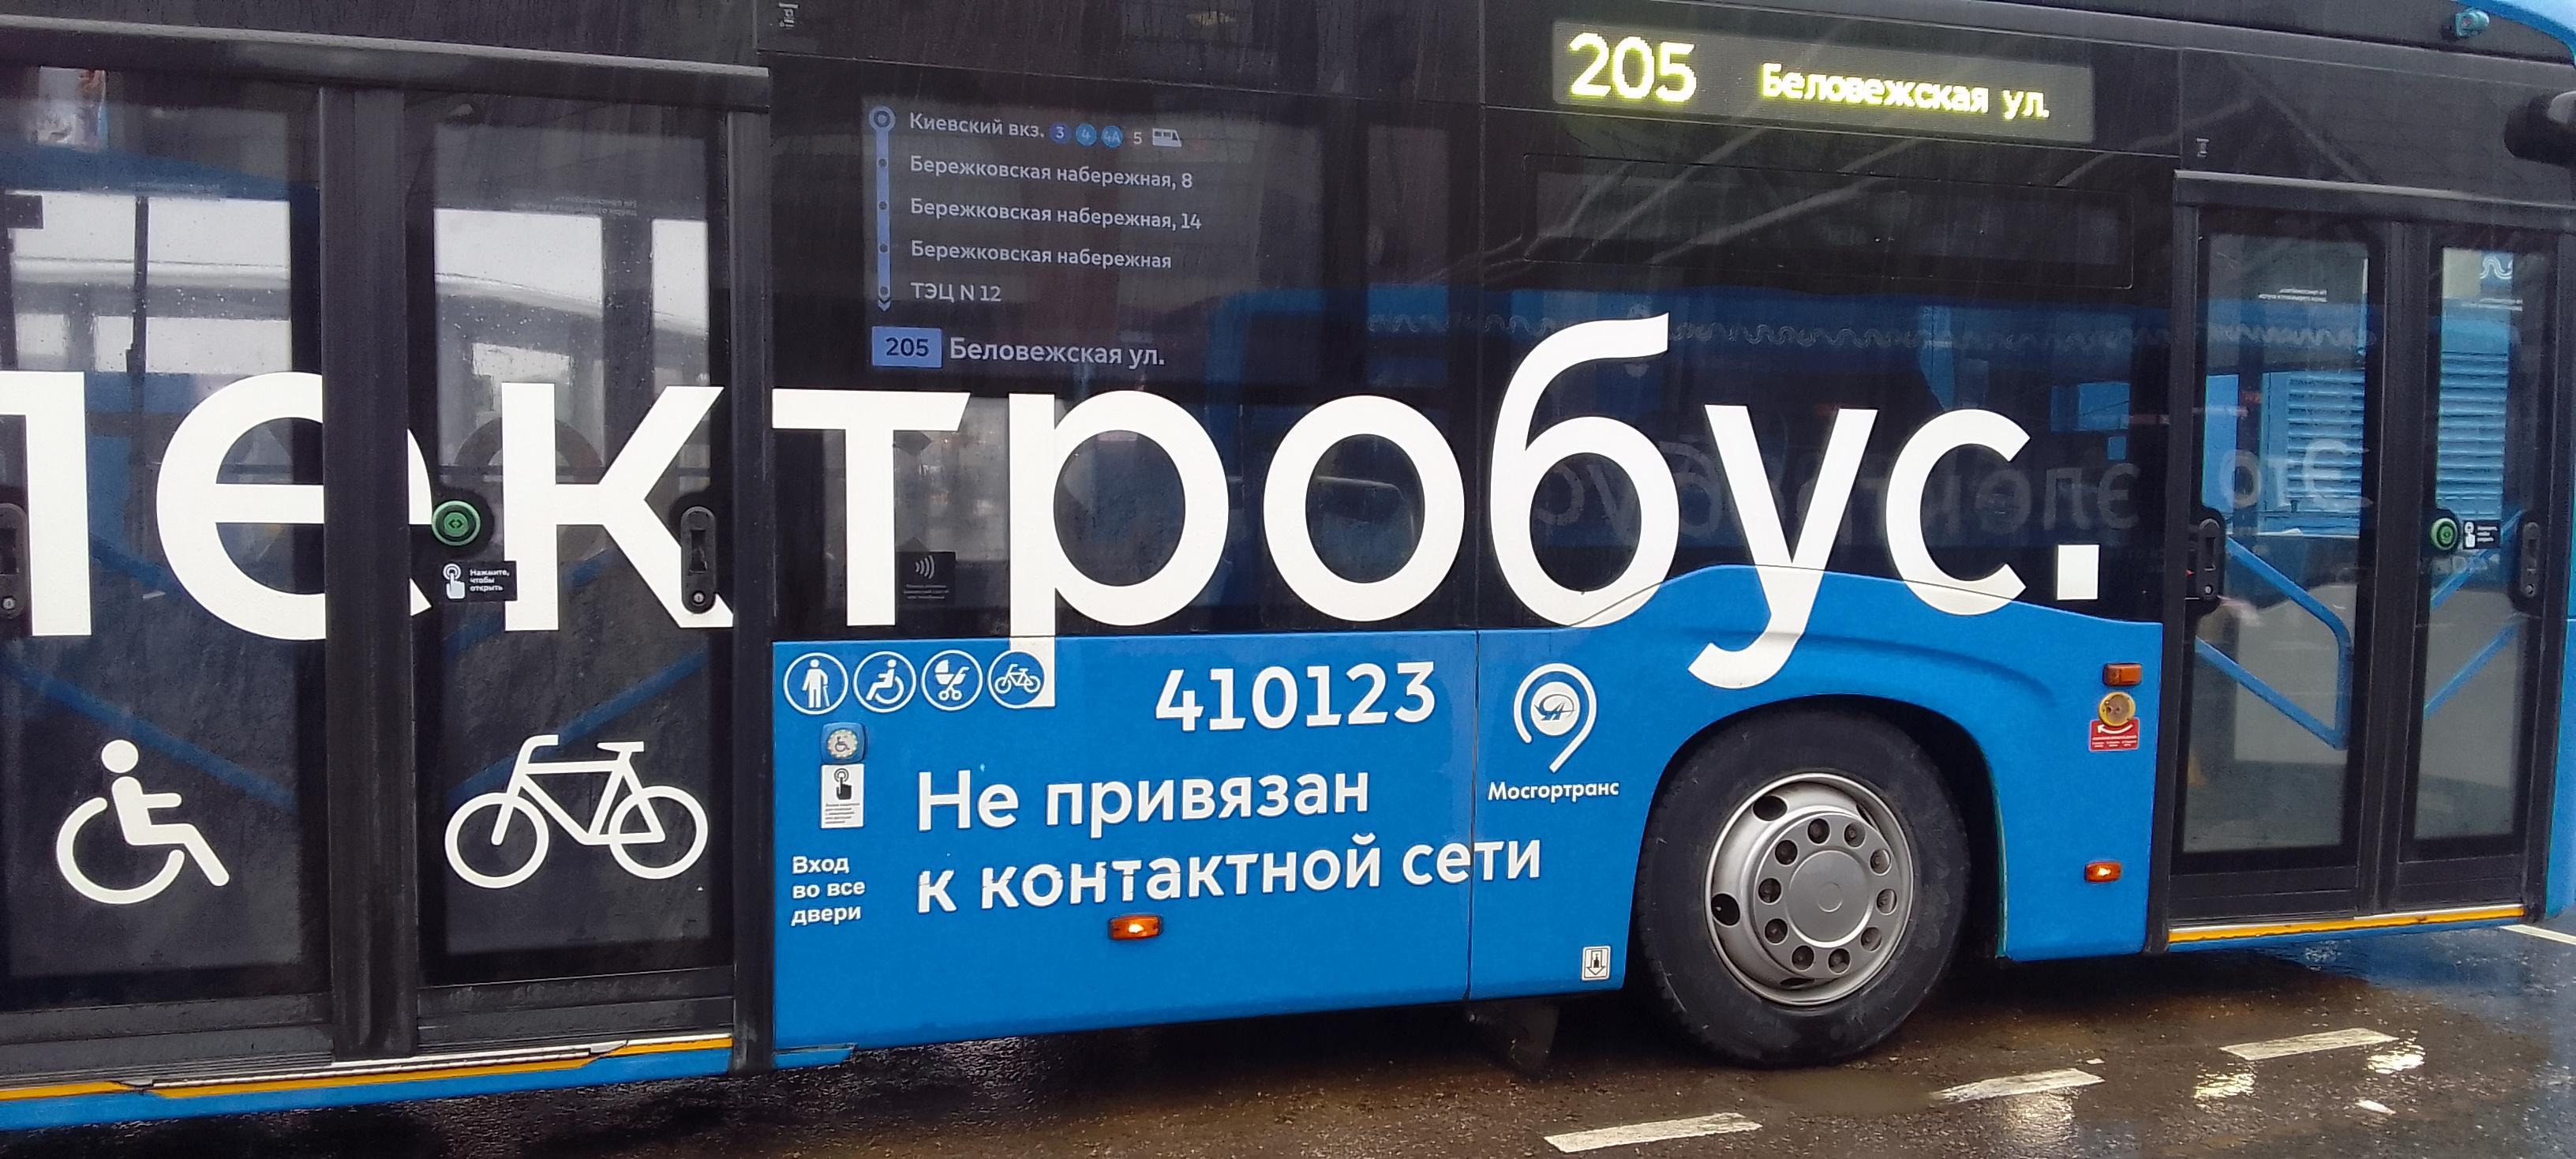 Маршрут 205 автобуса Москва.